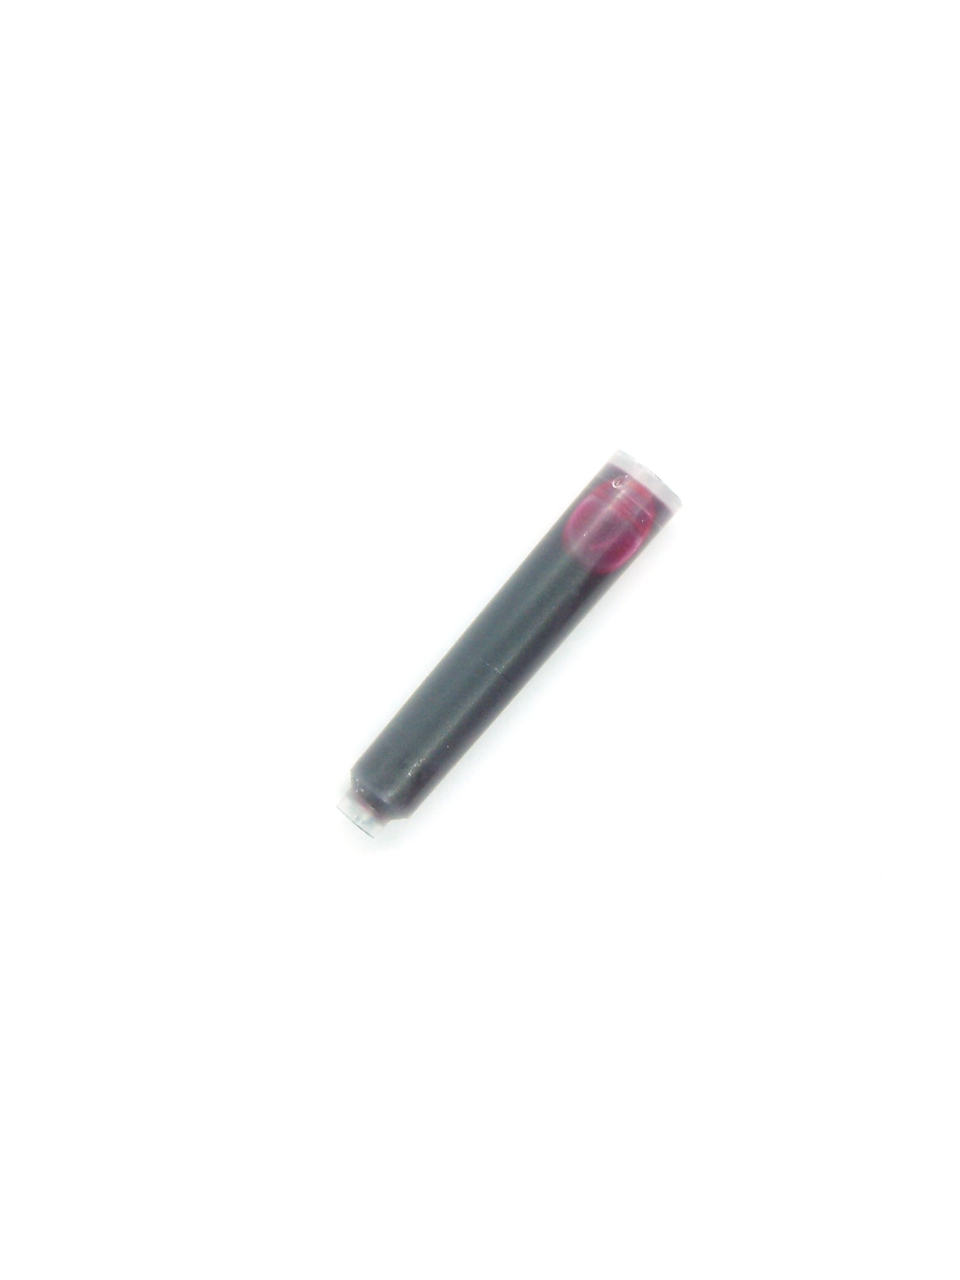 Ink Cartridges For Lanbitou Fountain Pens (Pink)